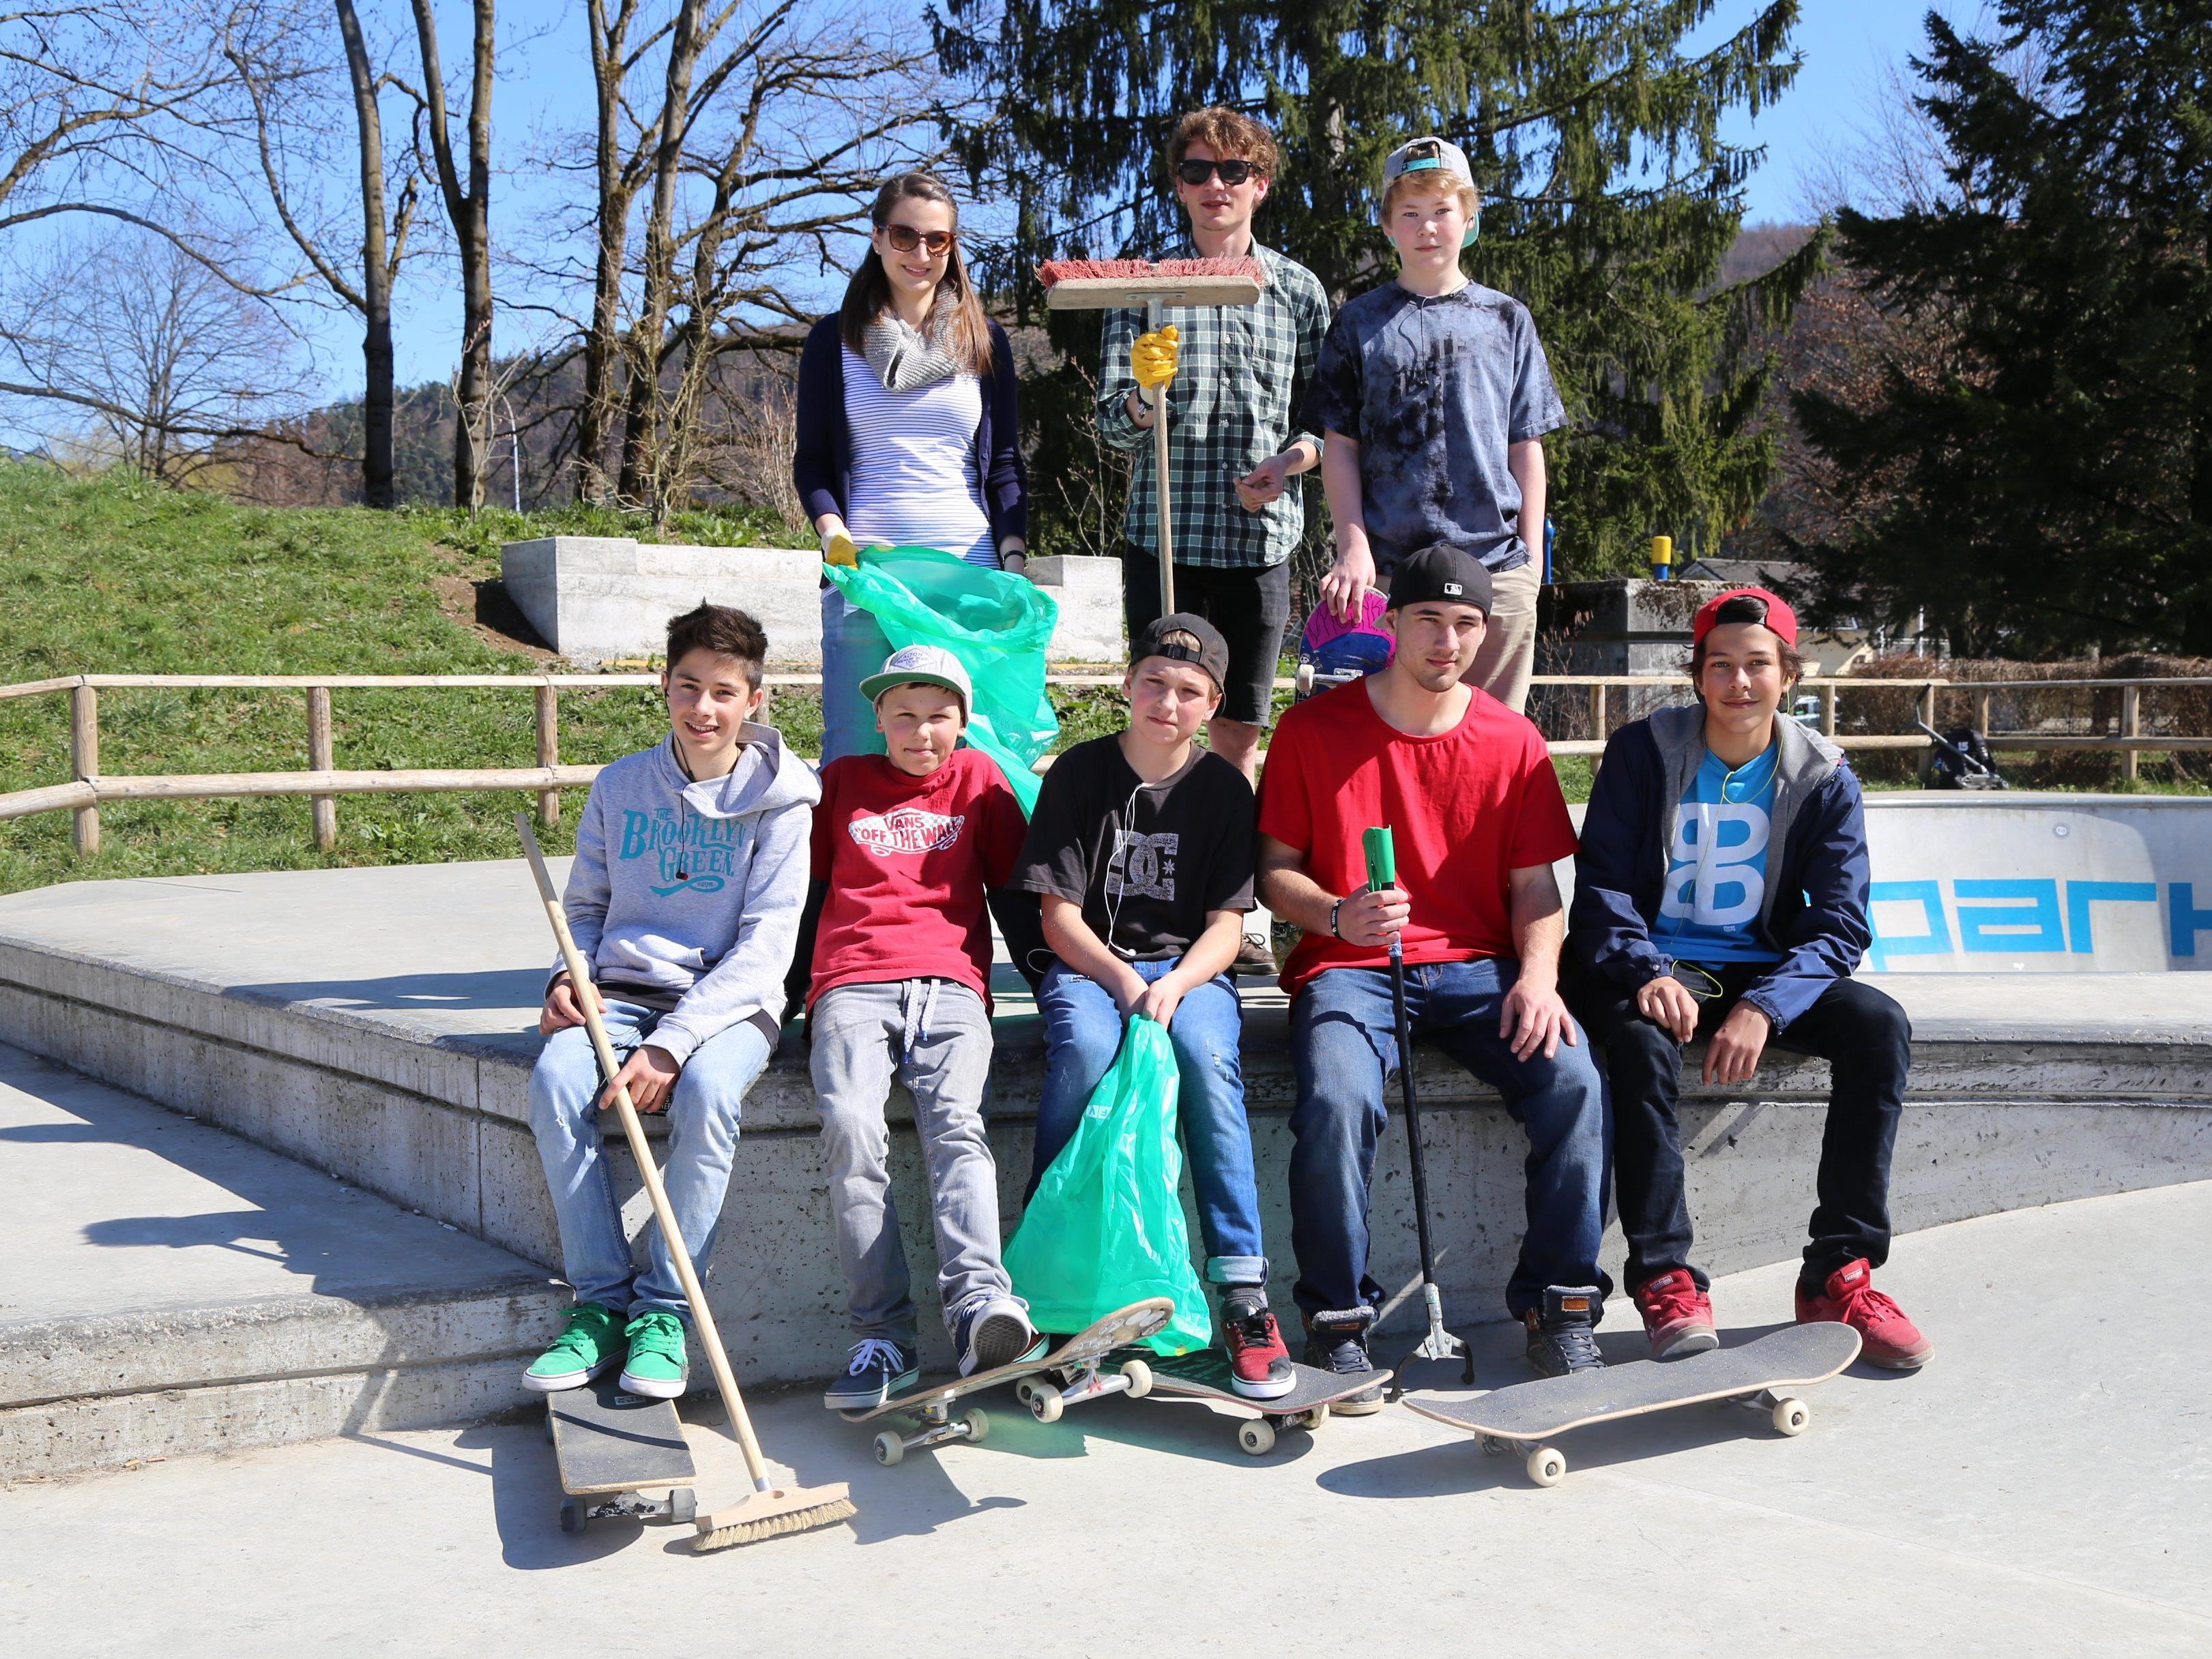 Jugendliche säuberten voller Eifer ihren Skateplatz .